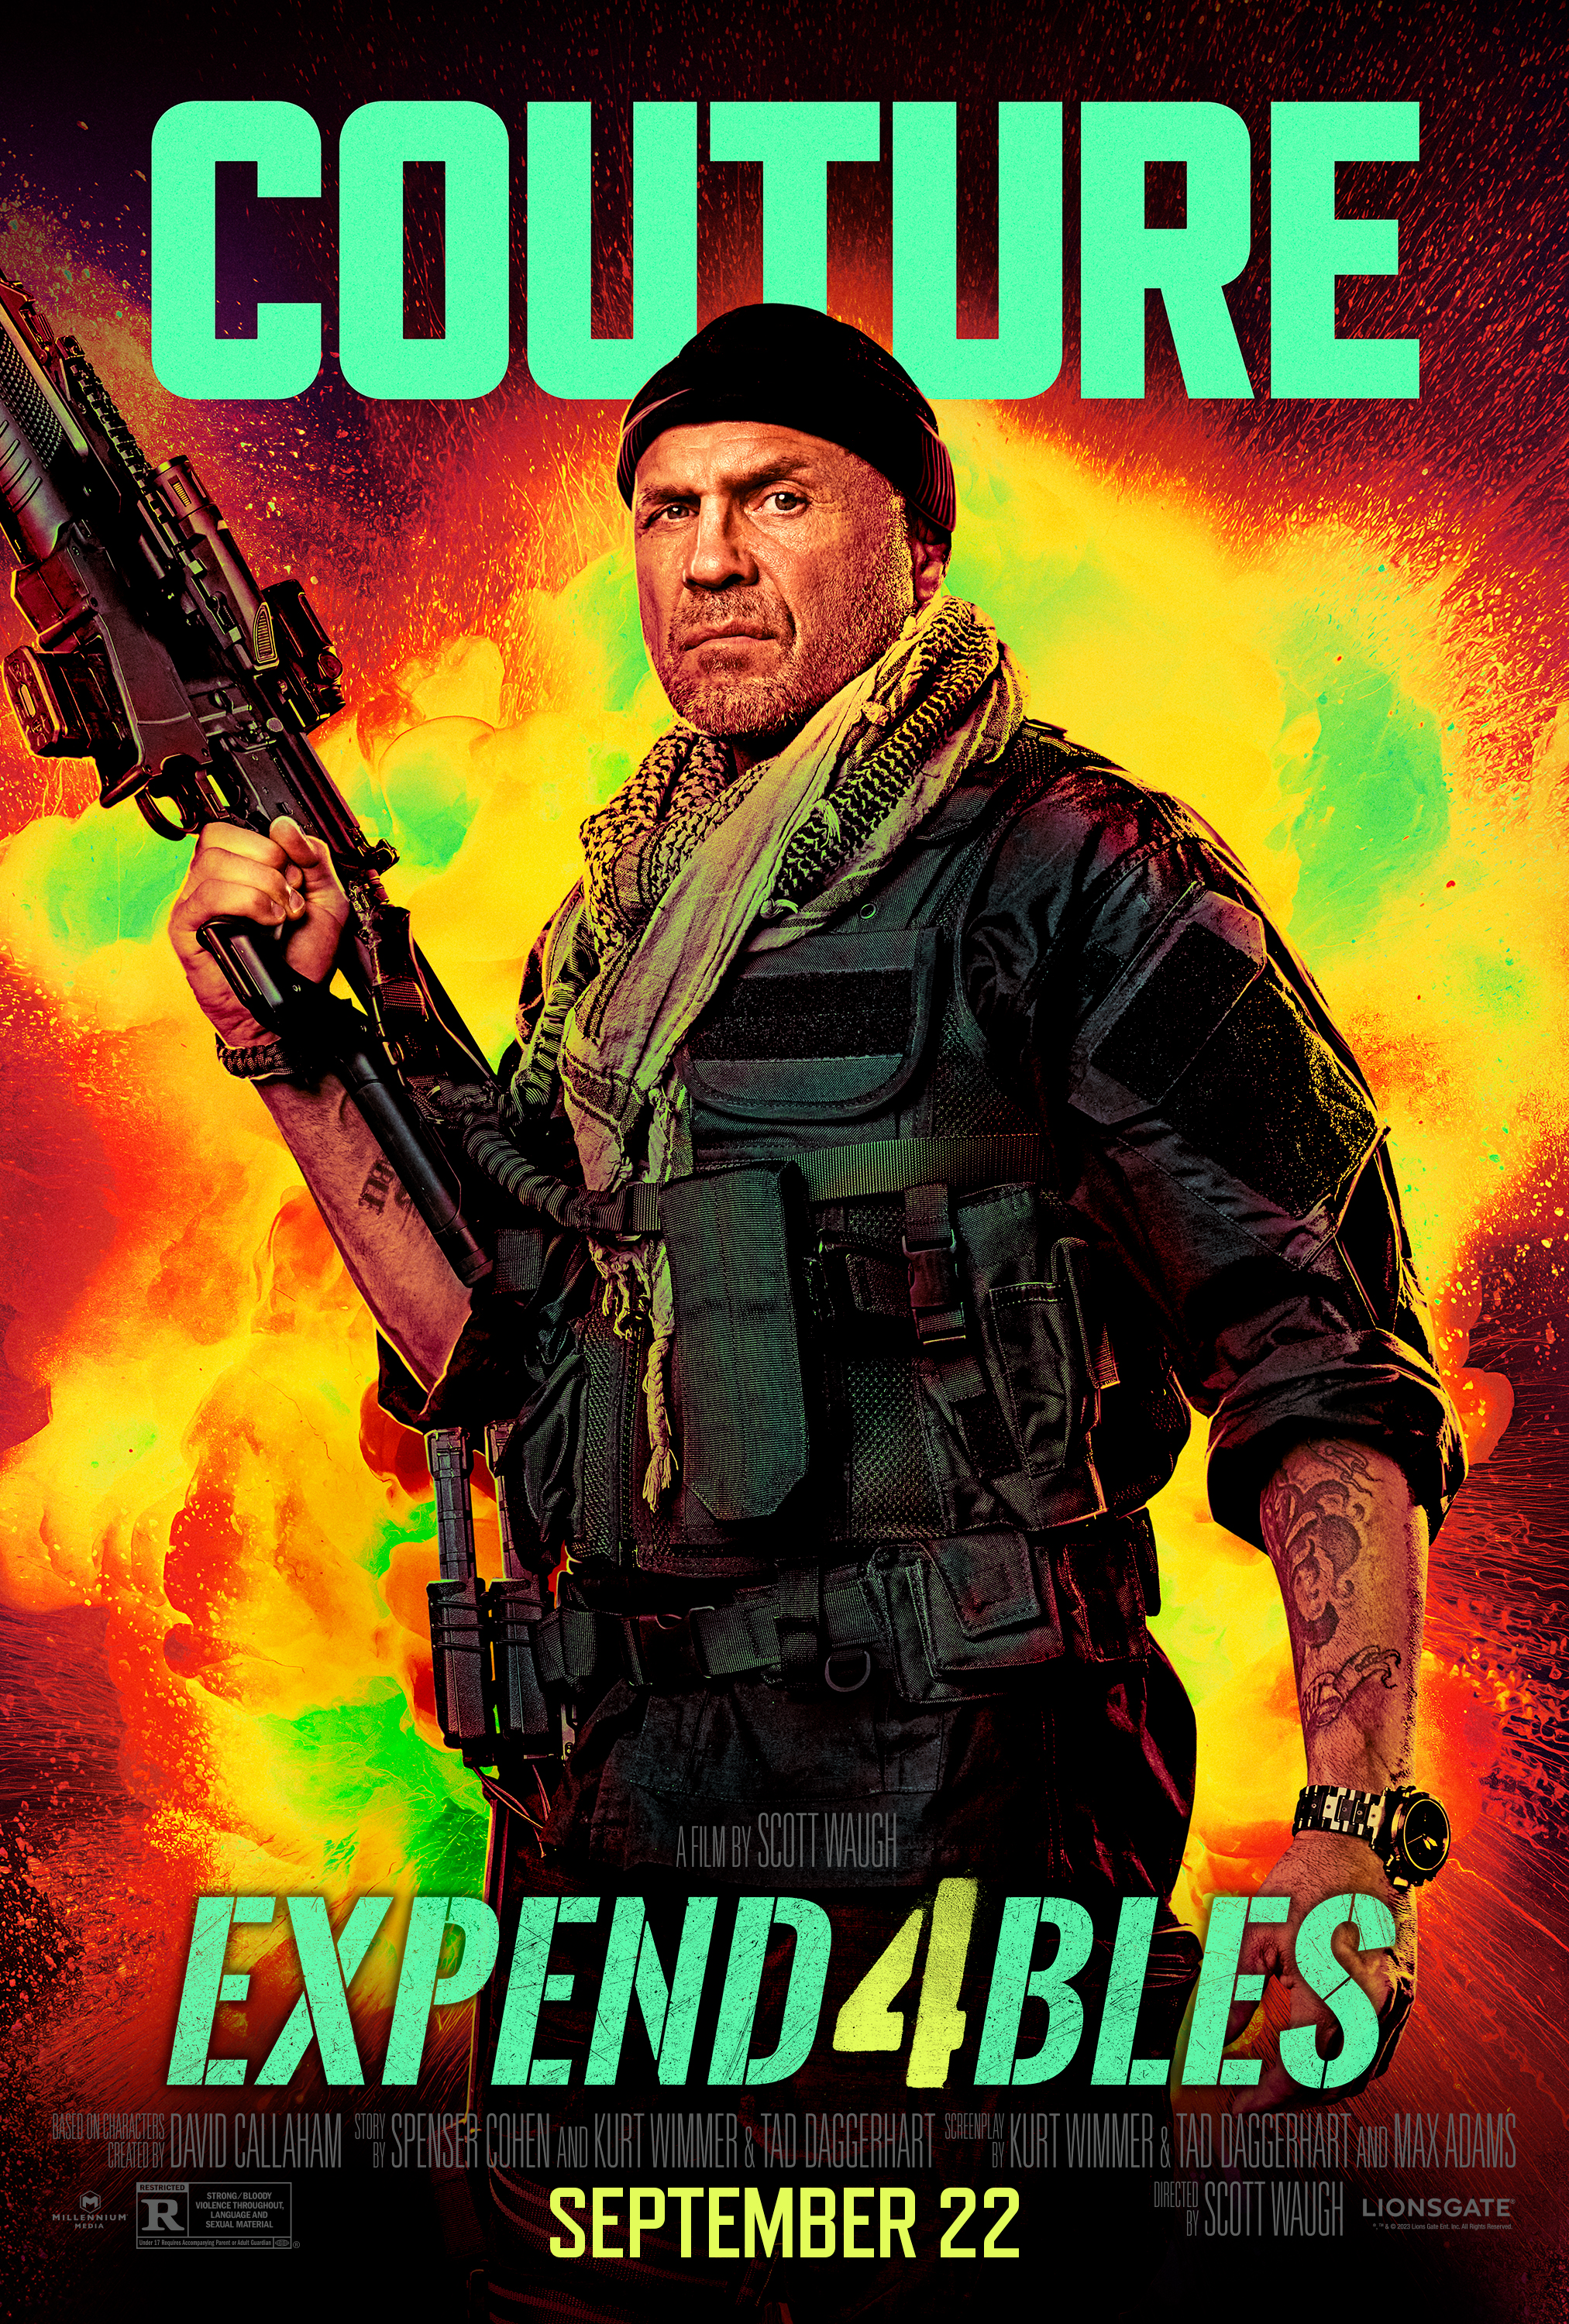 Randy Couture apunta su arma al póster de Expend4bles.